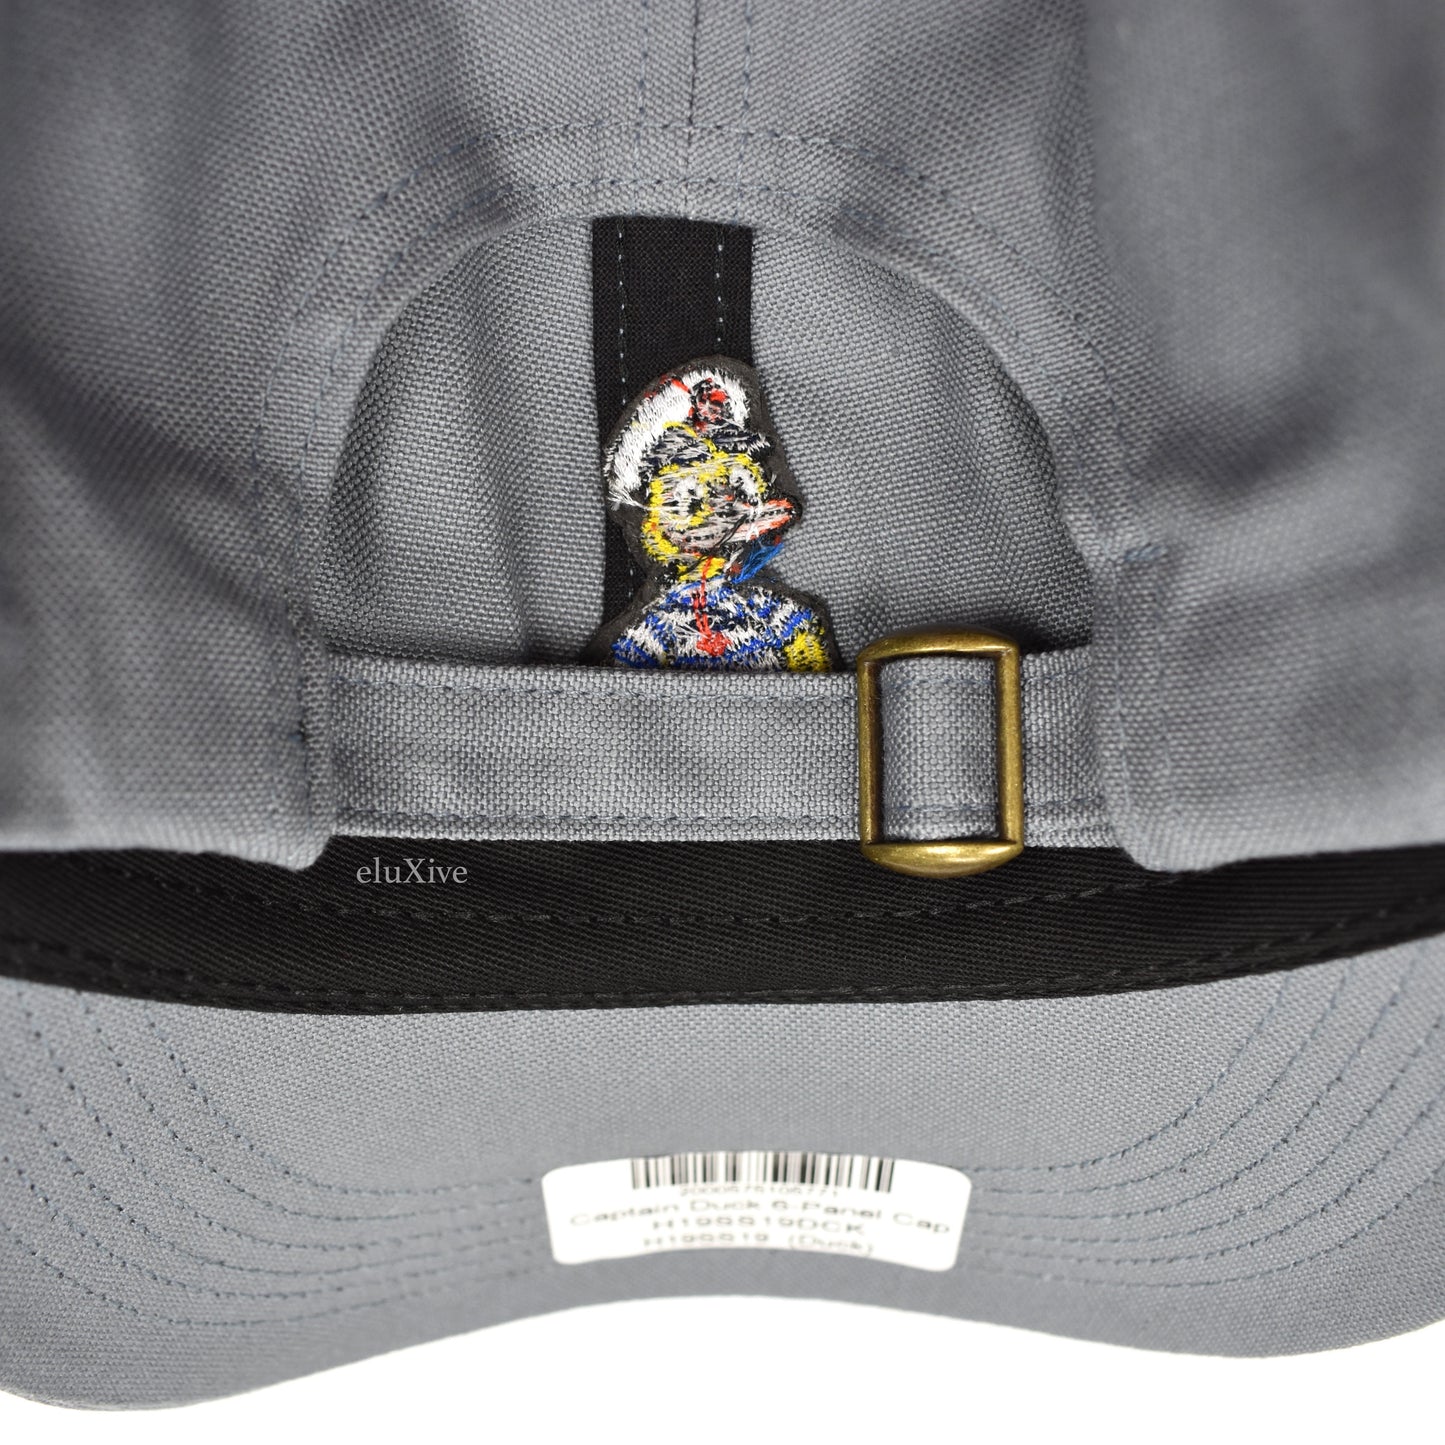 Noah - Captain Duck Core Logo Hat (Gray)